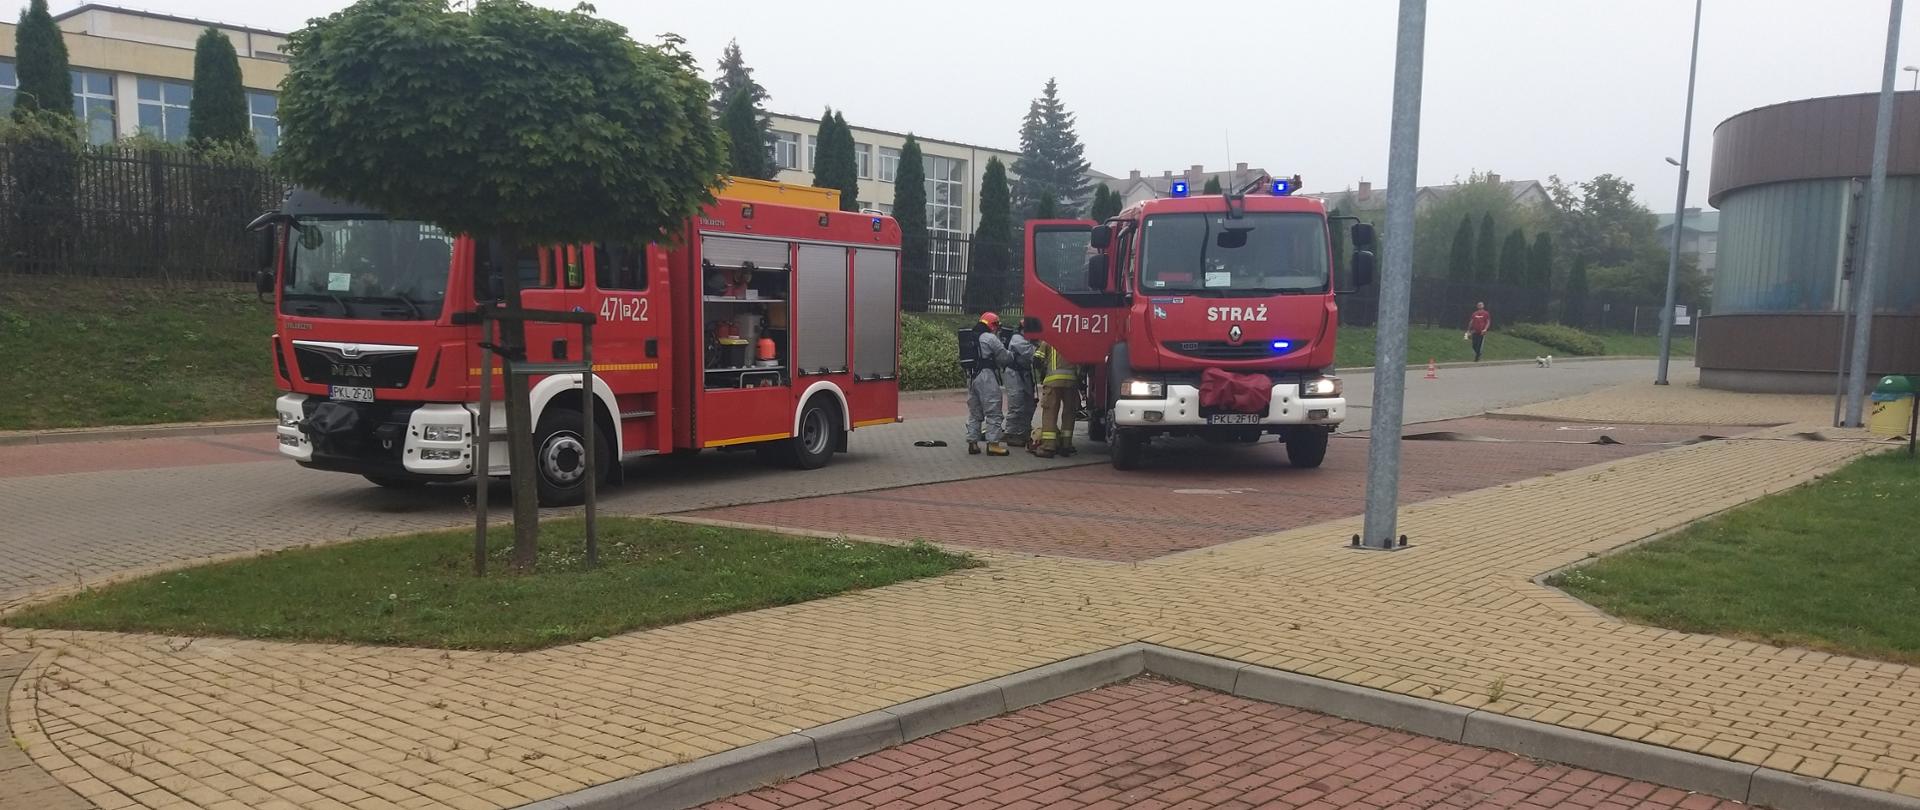 Zdjęcie przedstawia pojazdy gaśnicze oraz strażaków